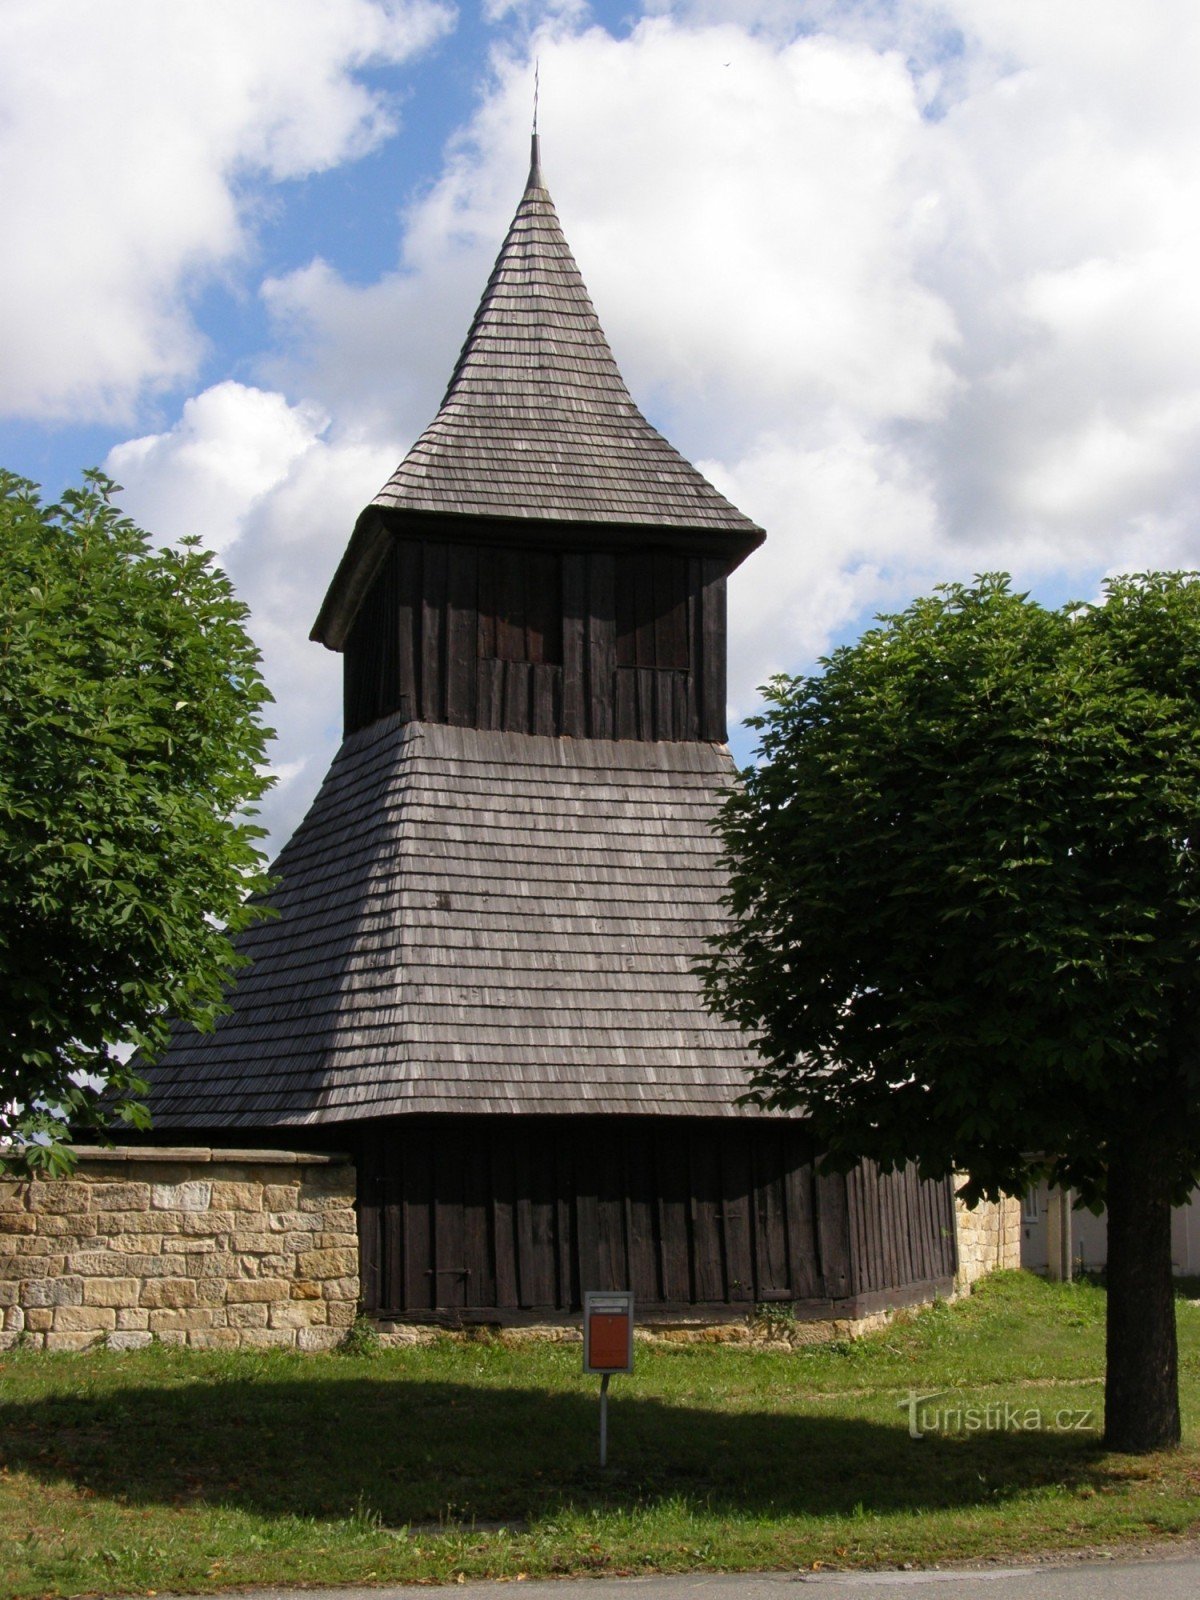 ヴィソチャニ - 木造の教会。 木製の鐘楼のある市場